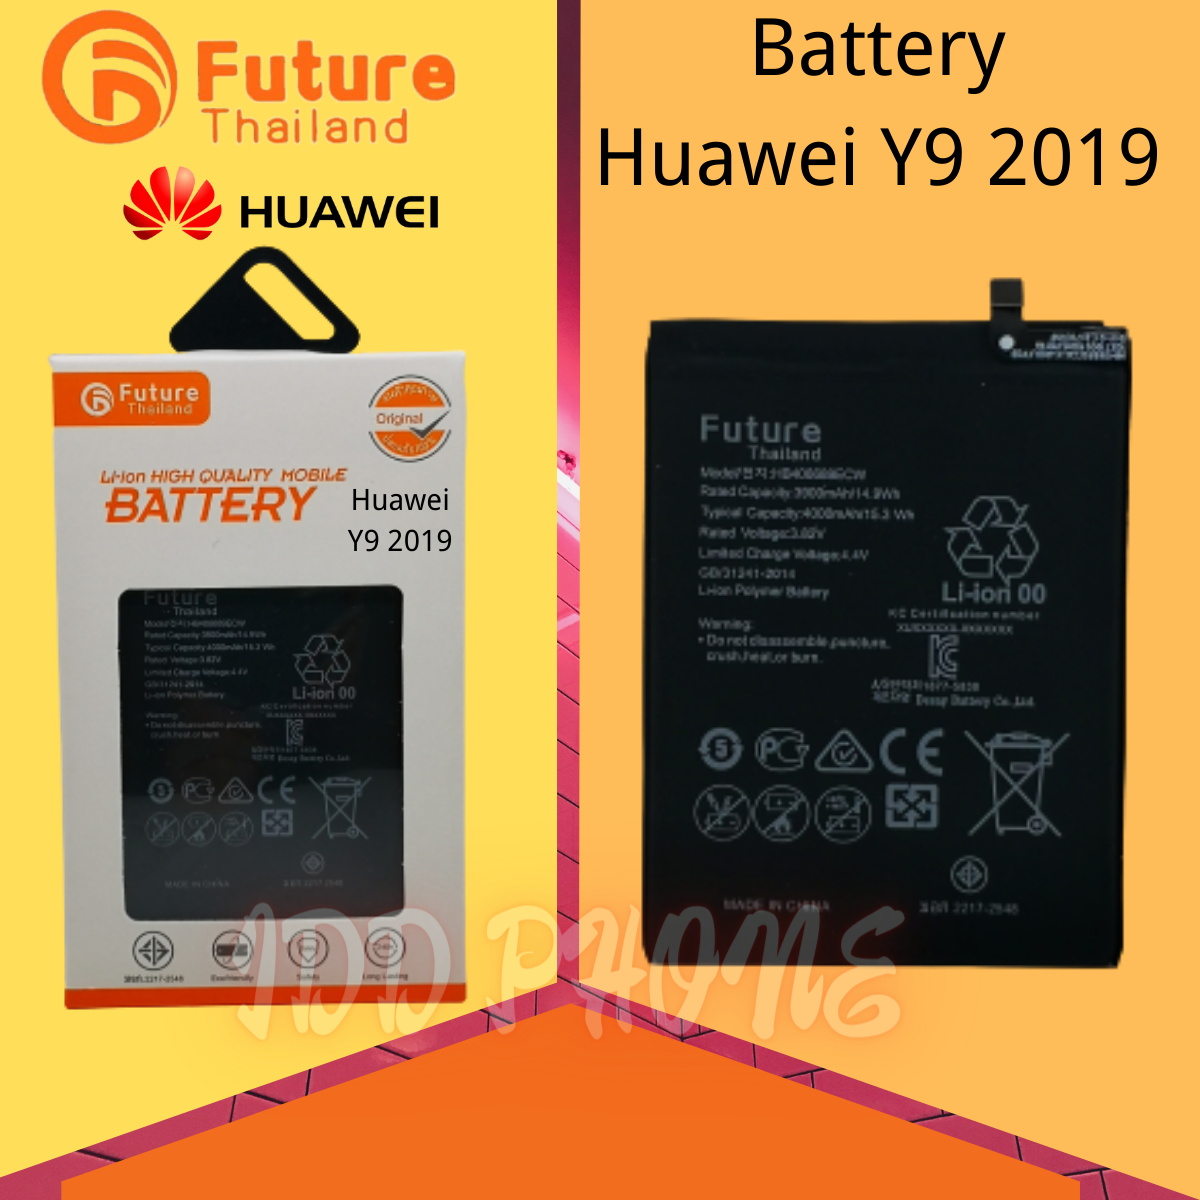 แบตเตอรี่ Future แบตเตอรี่มือถือ  Huawei Y9 2019 Battery แบต Huawei Y9 2019 มีประกัน 6 เดือน